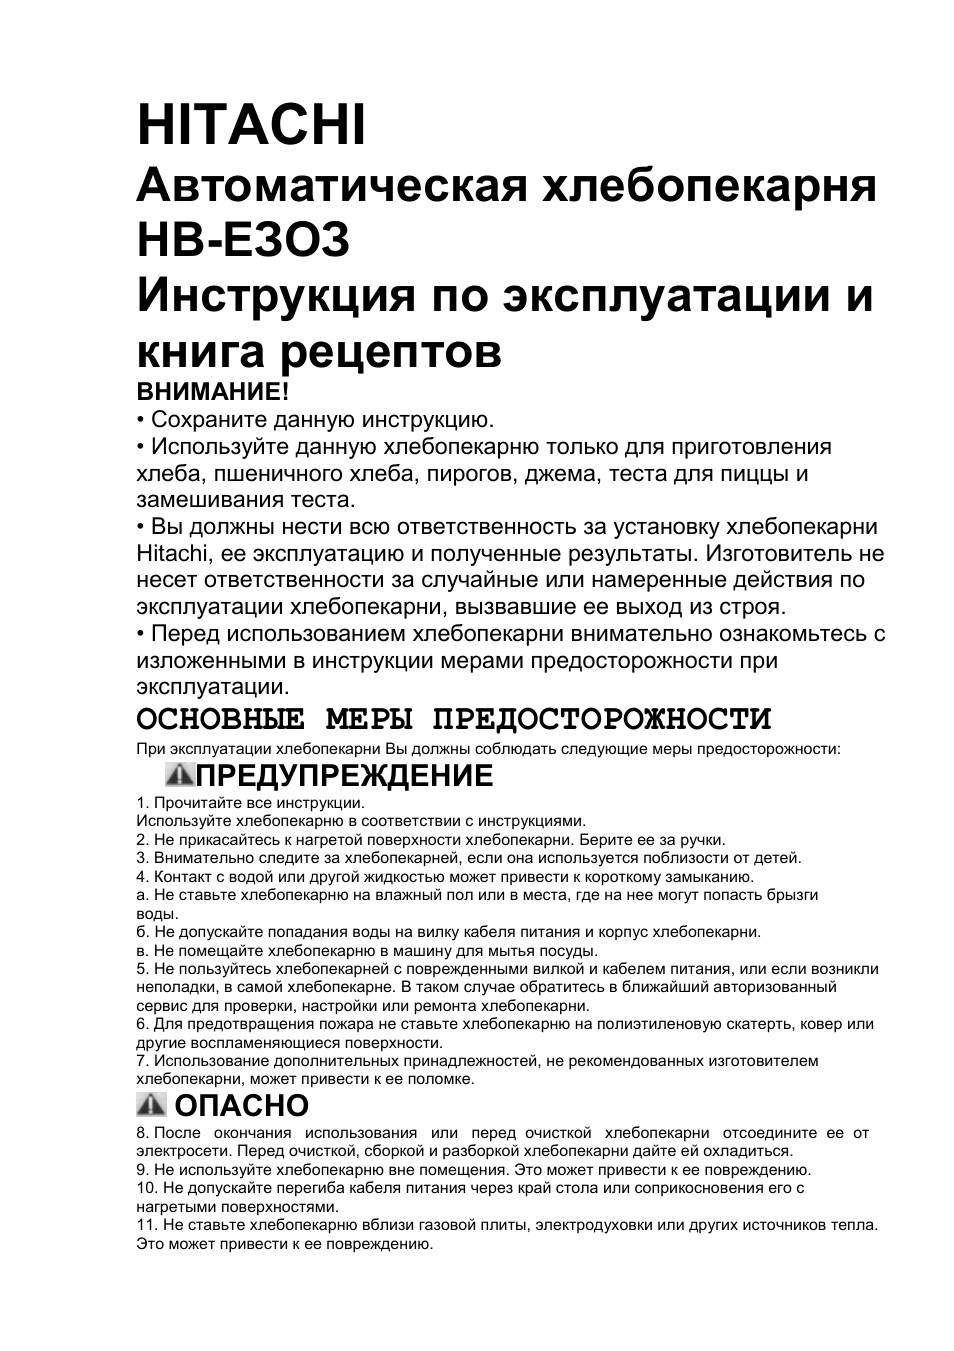 Инструкция по эксплуатации Hitachi HB-E303 | 43 страницы